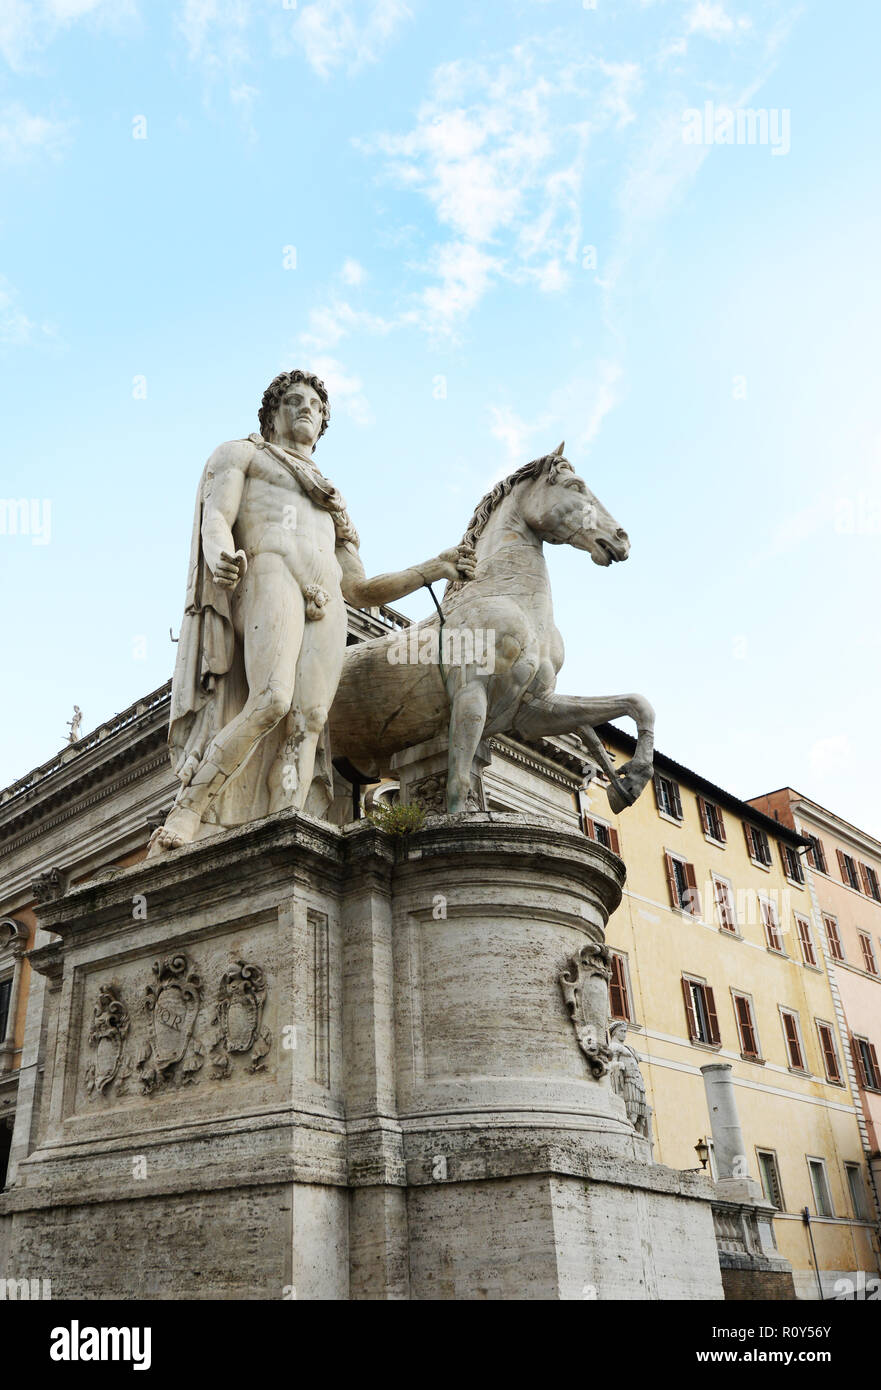 Reiterstandbild auf dem Kapitol in Rom. Stockfoto